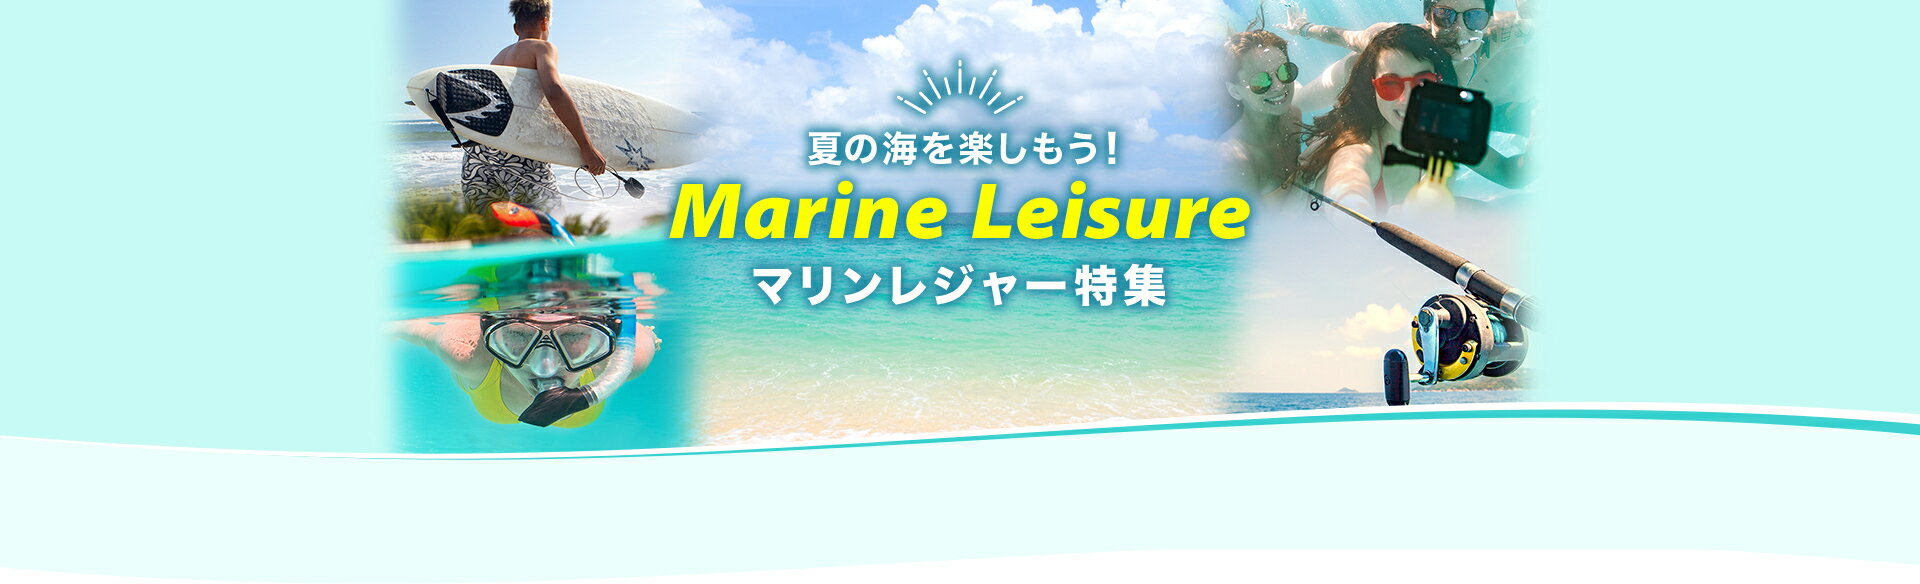 夏の海を楽しもう！Marine Leisure マリンレジャー特集